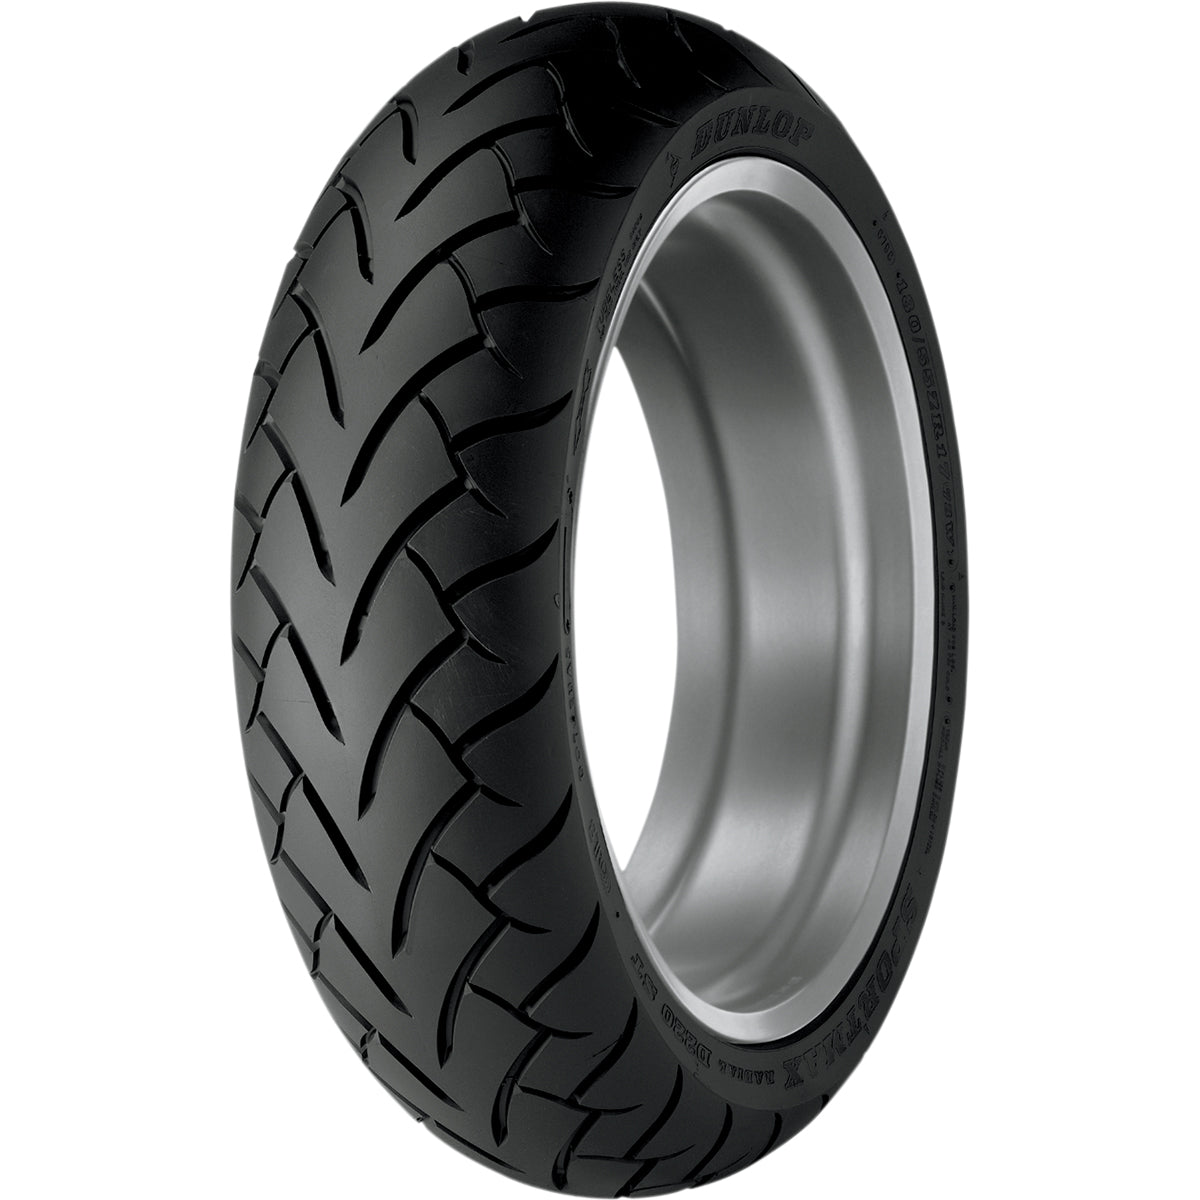 Dunlop D220 17" Rear Street Tires-3336